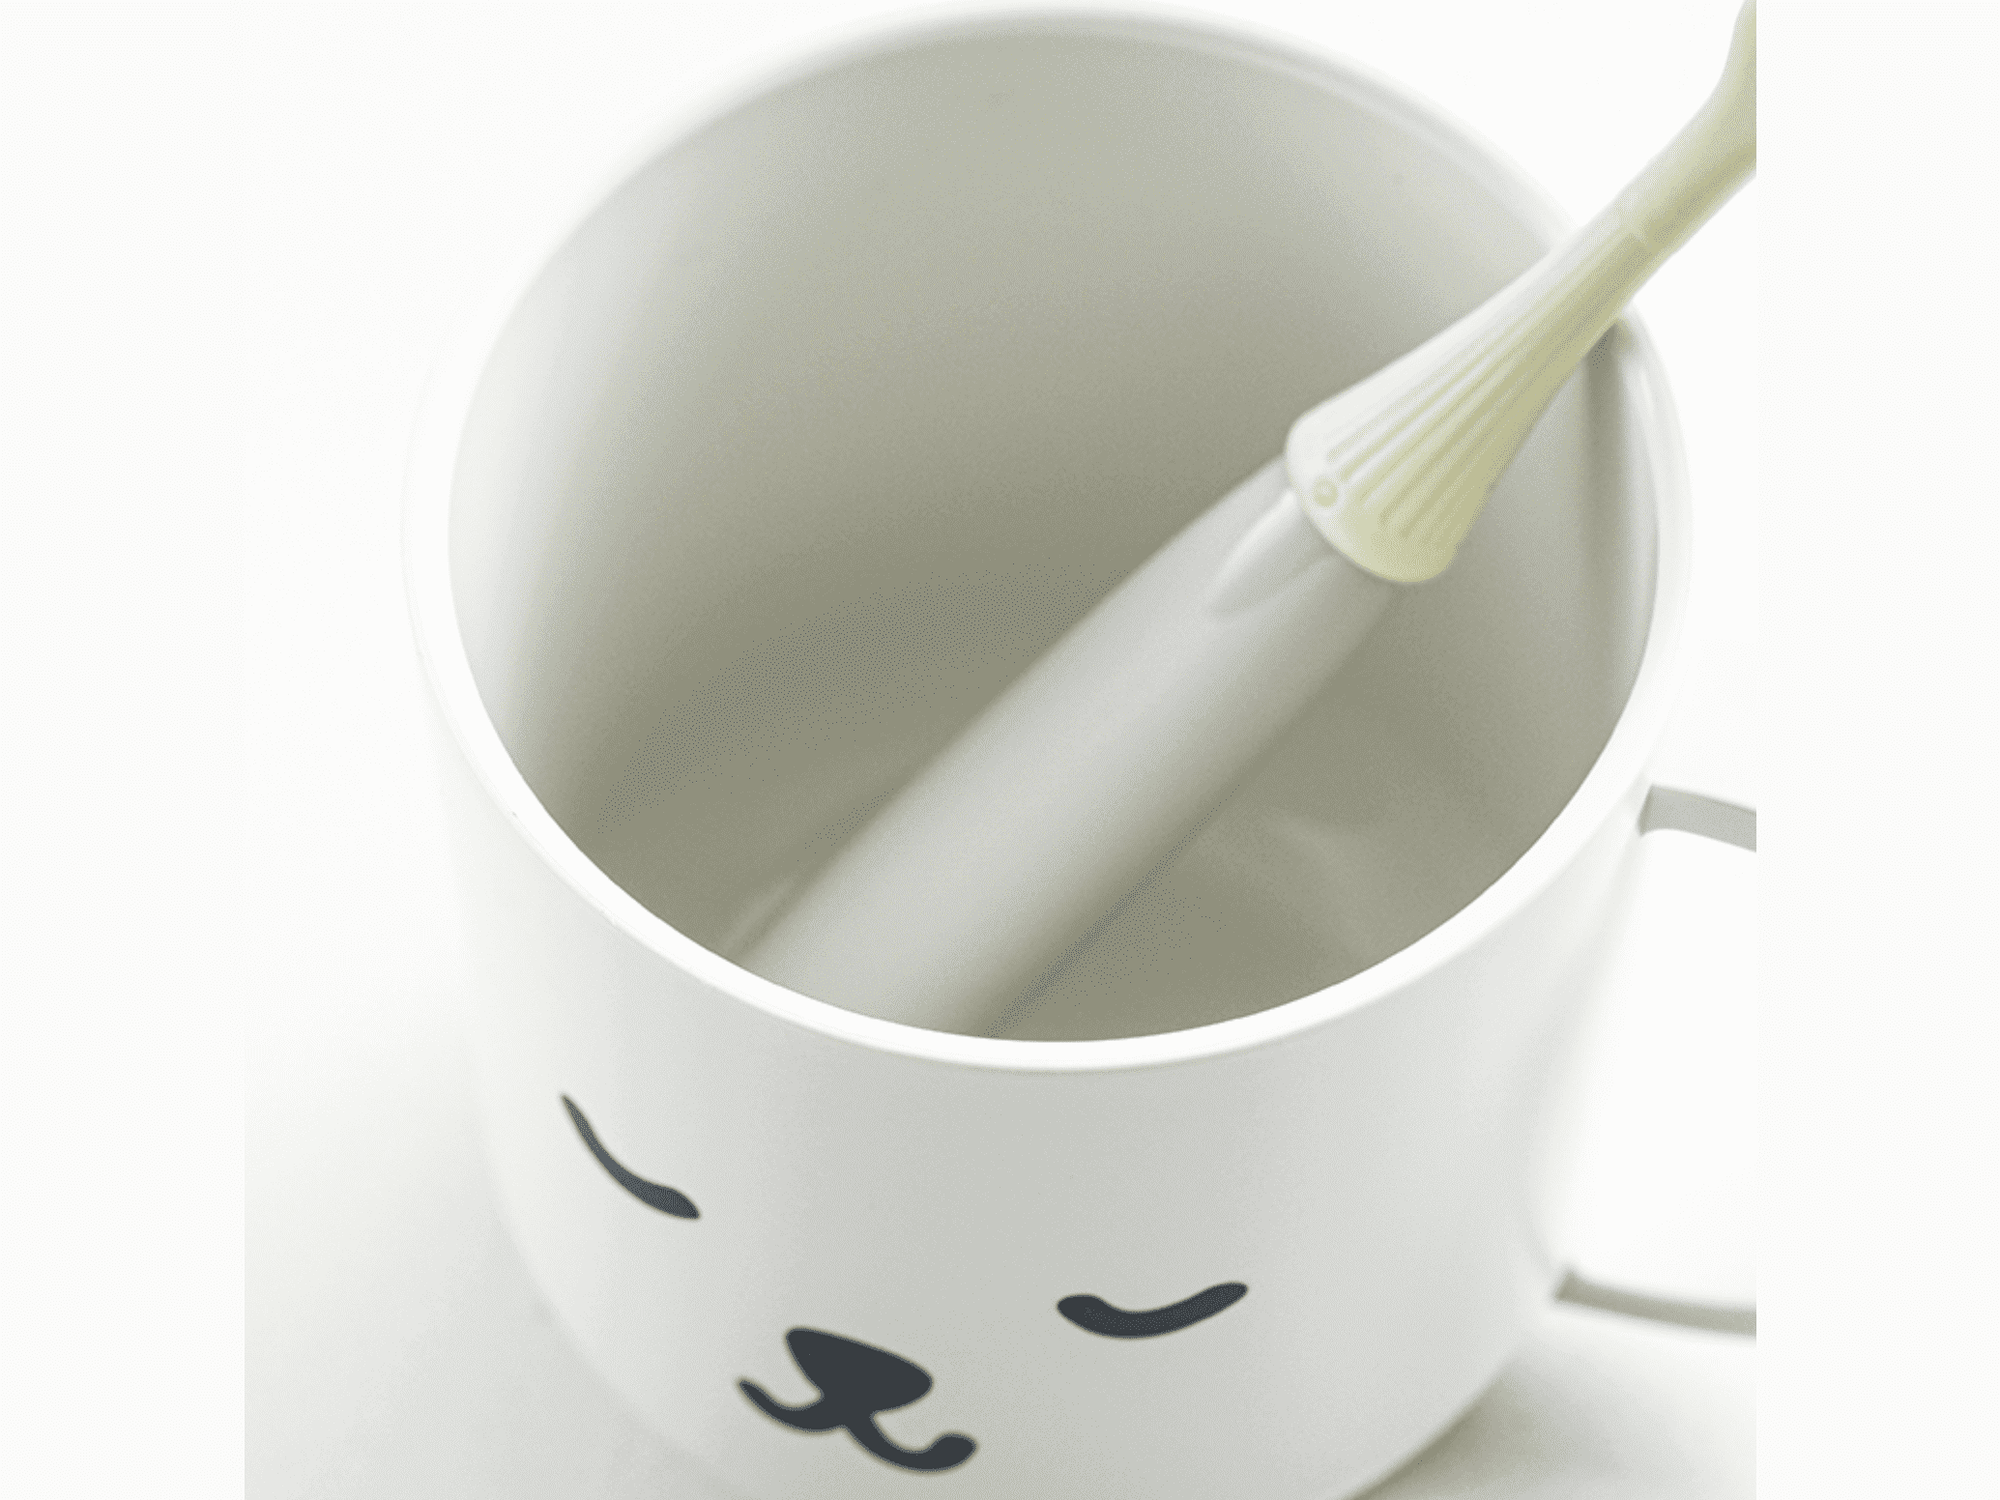 Shimoyama Mouthwash Cup